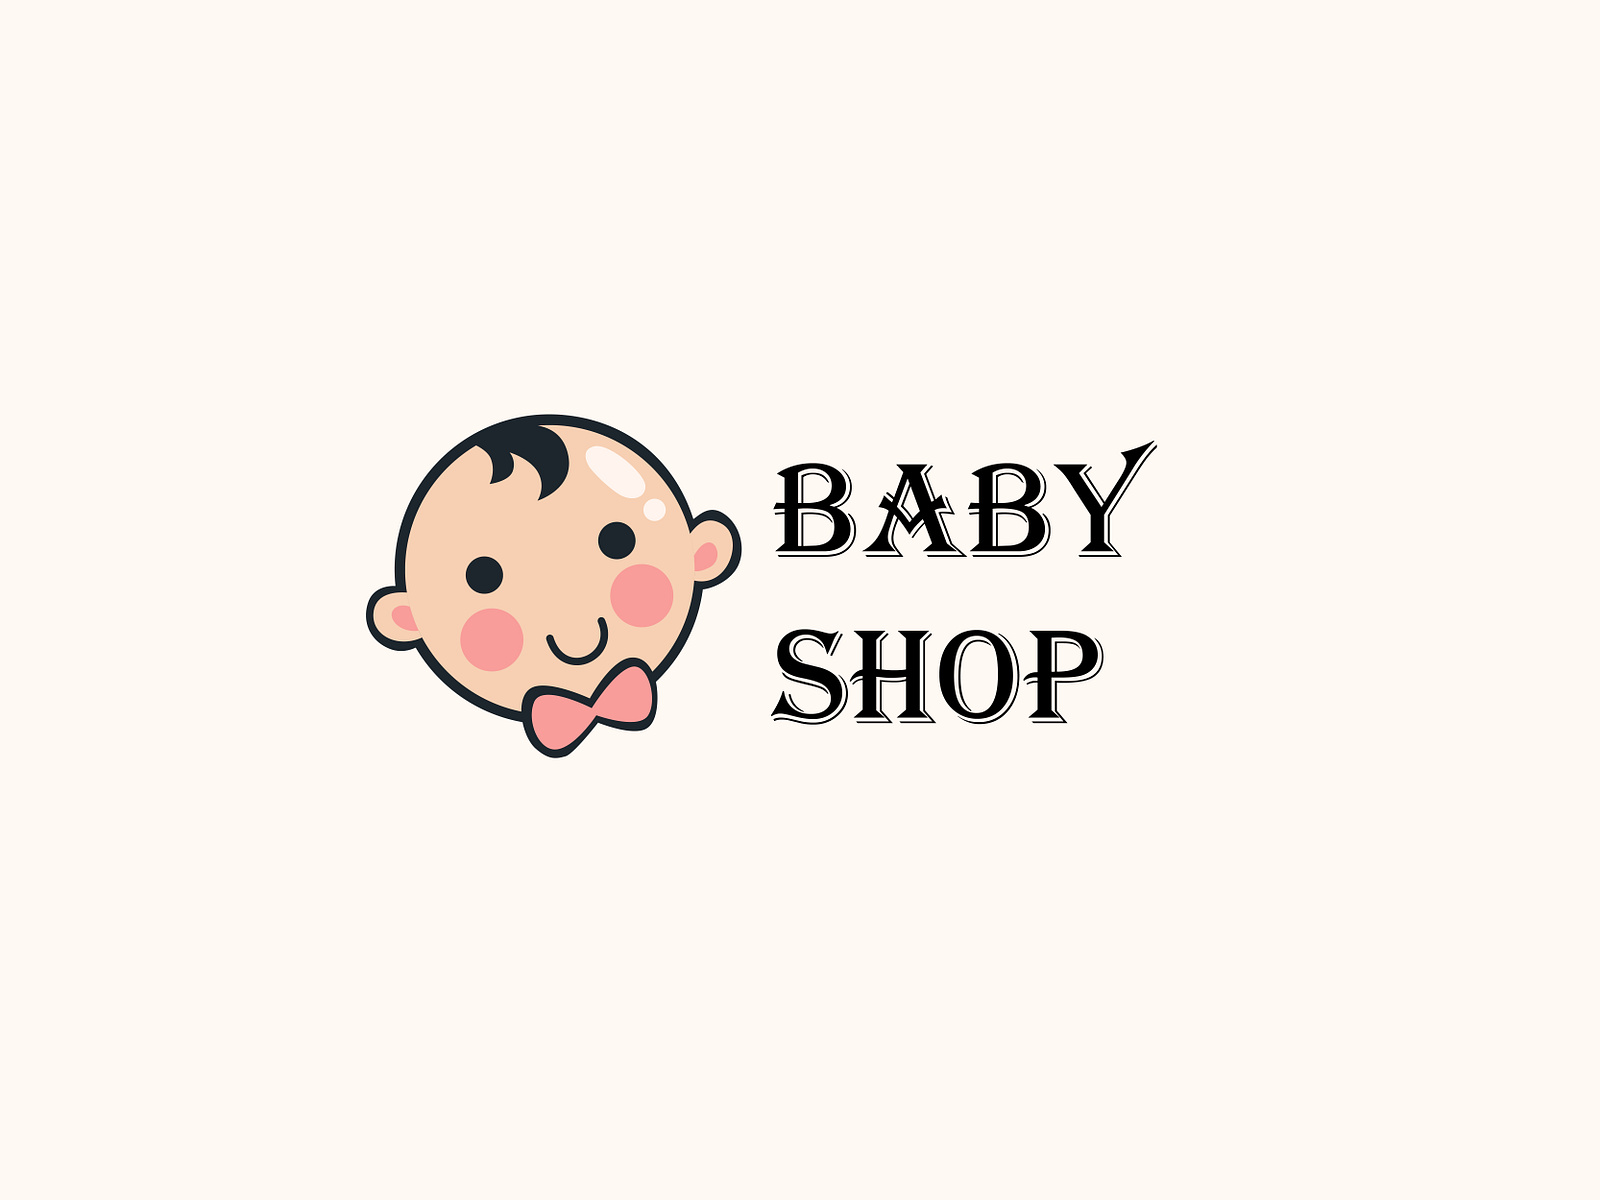 Baby shop Logo. by Shahadet Hossain on Dribbble